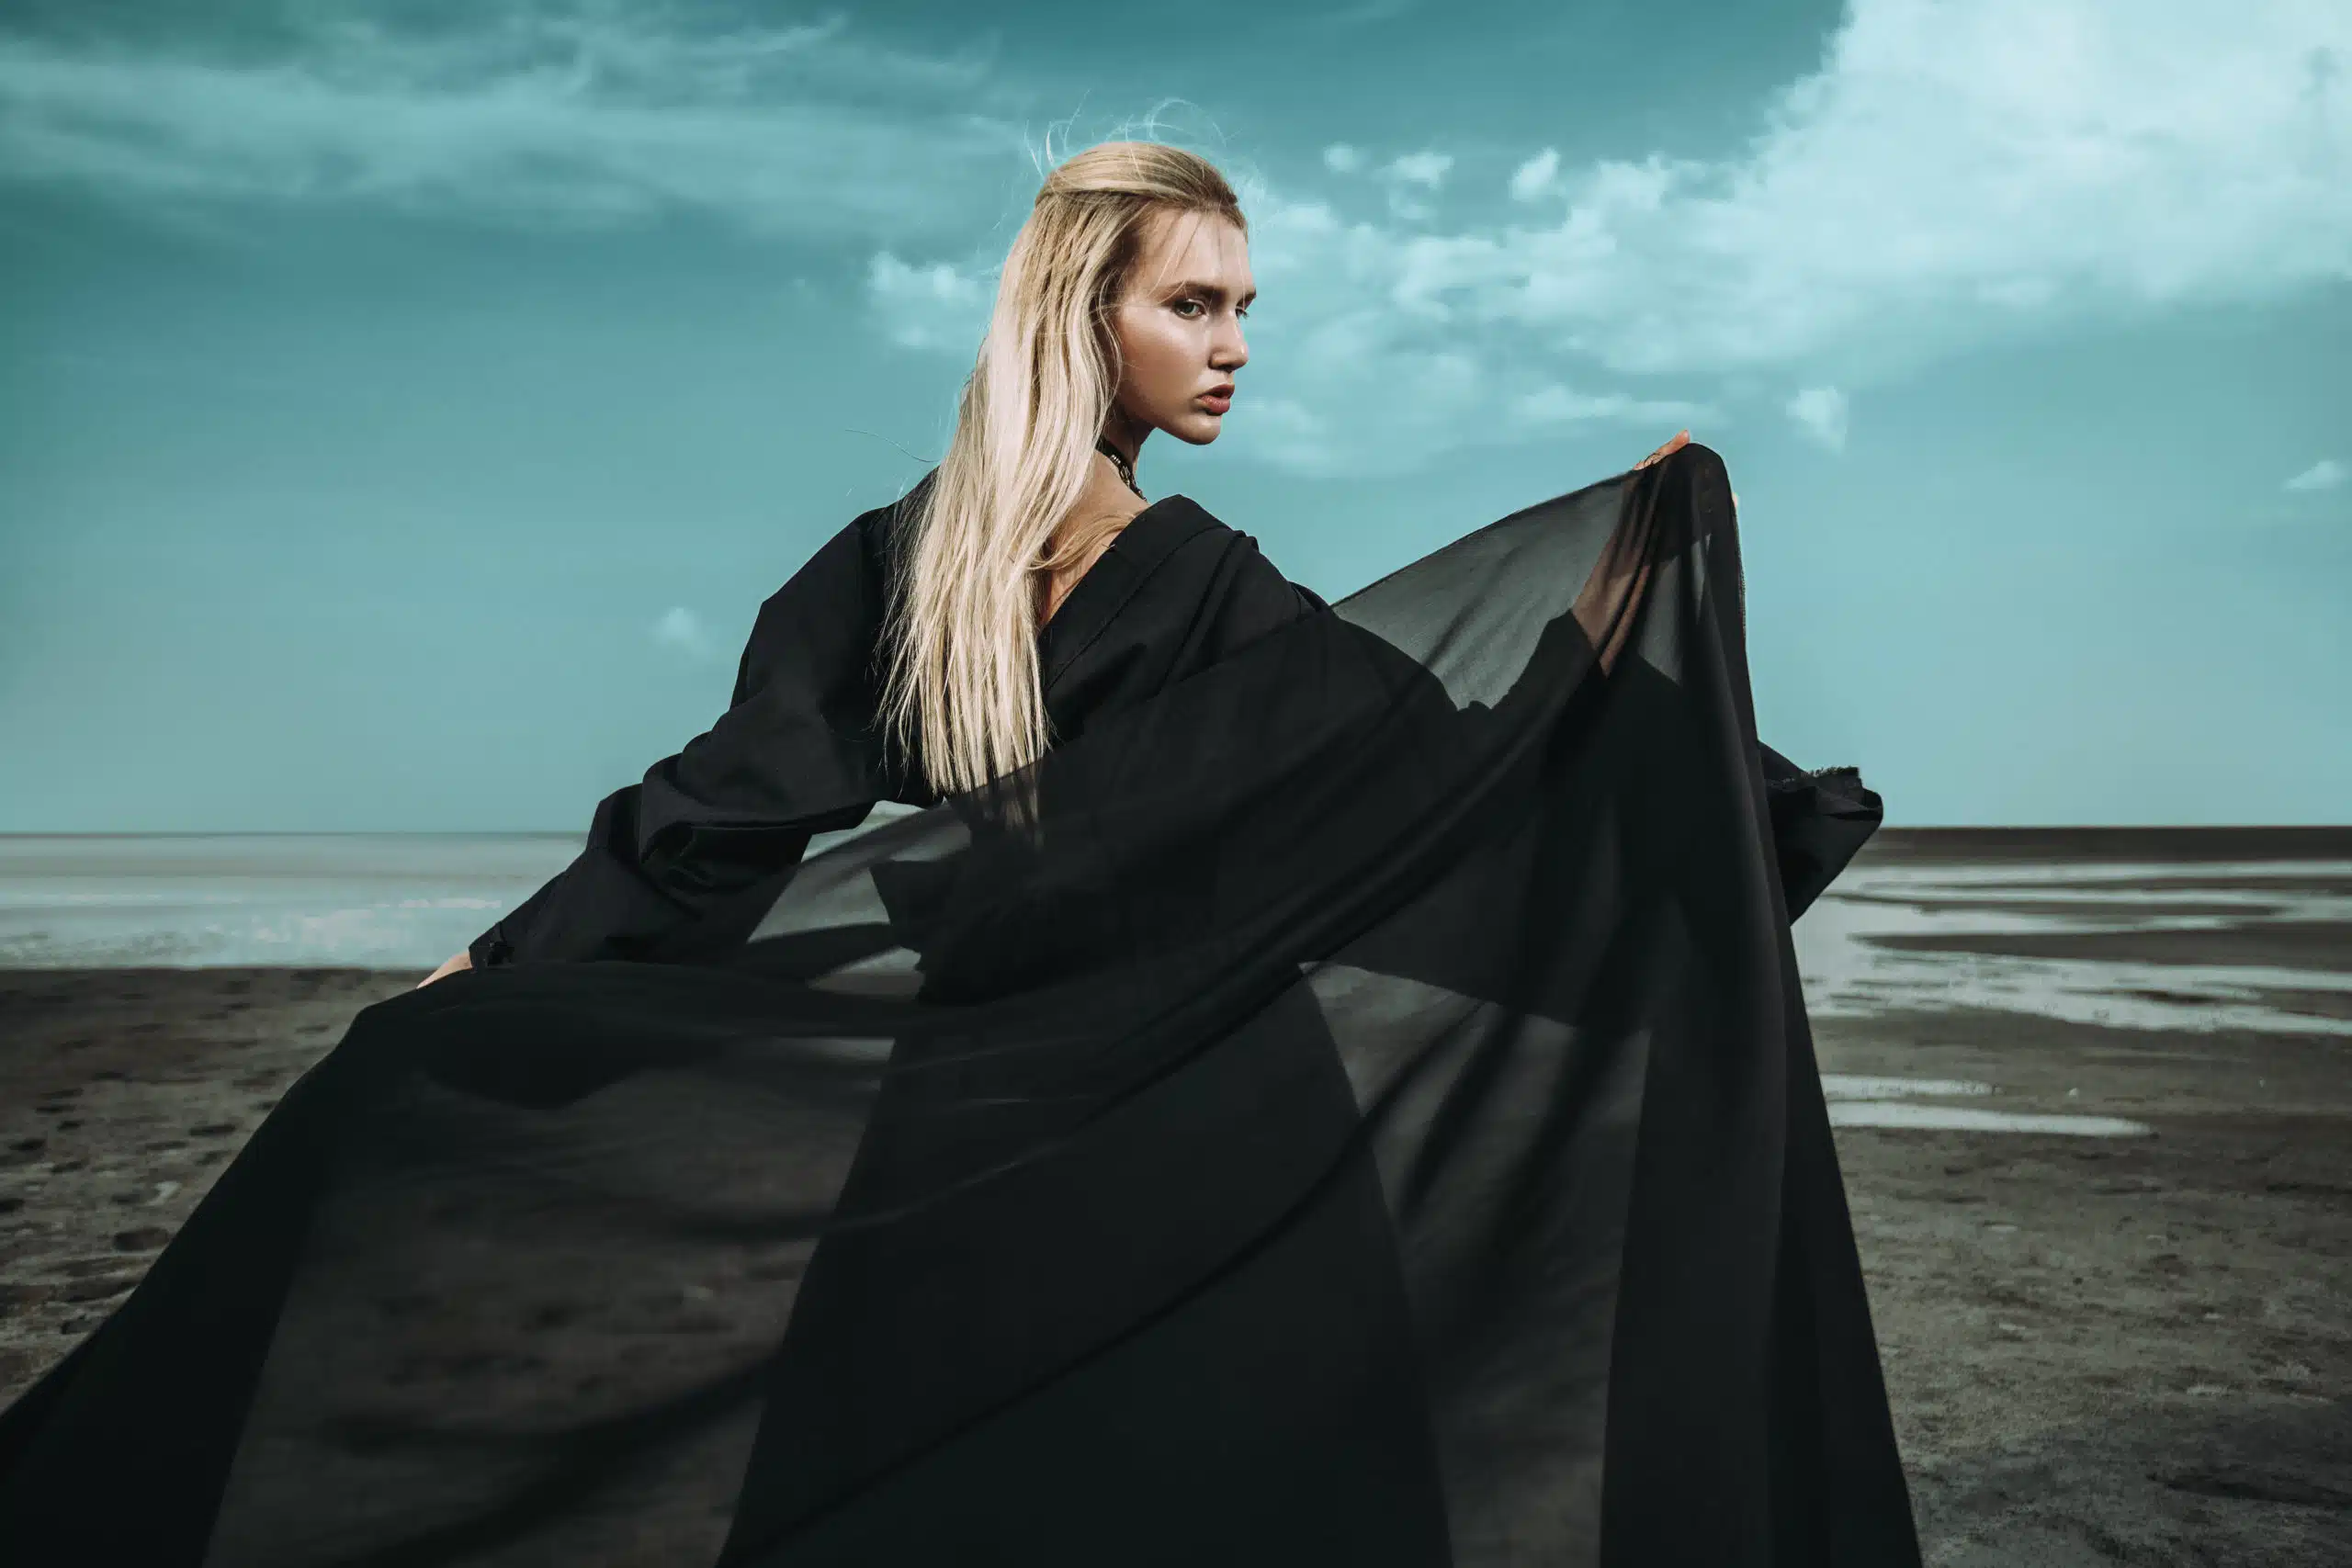 Elegant blonde woman in black dress out in the gloomy seashore.